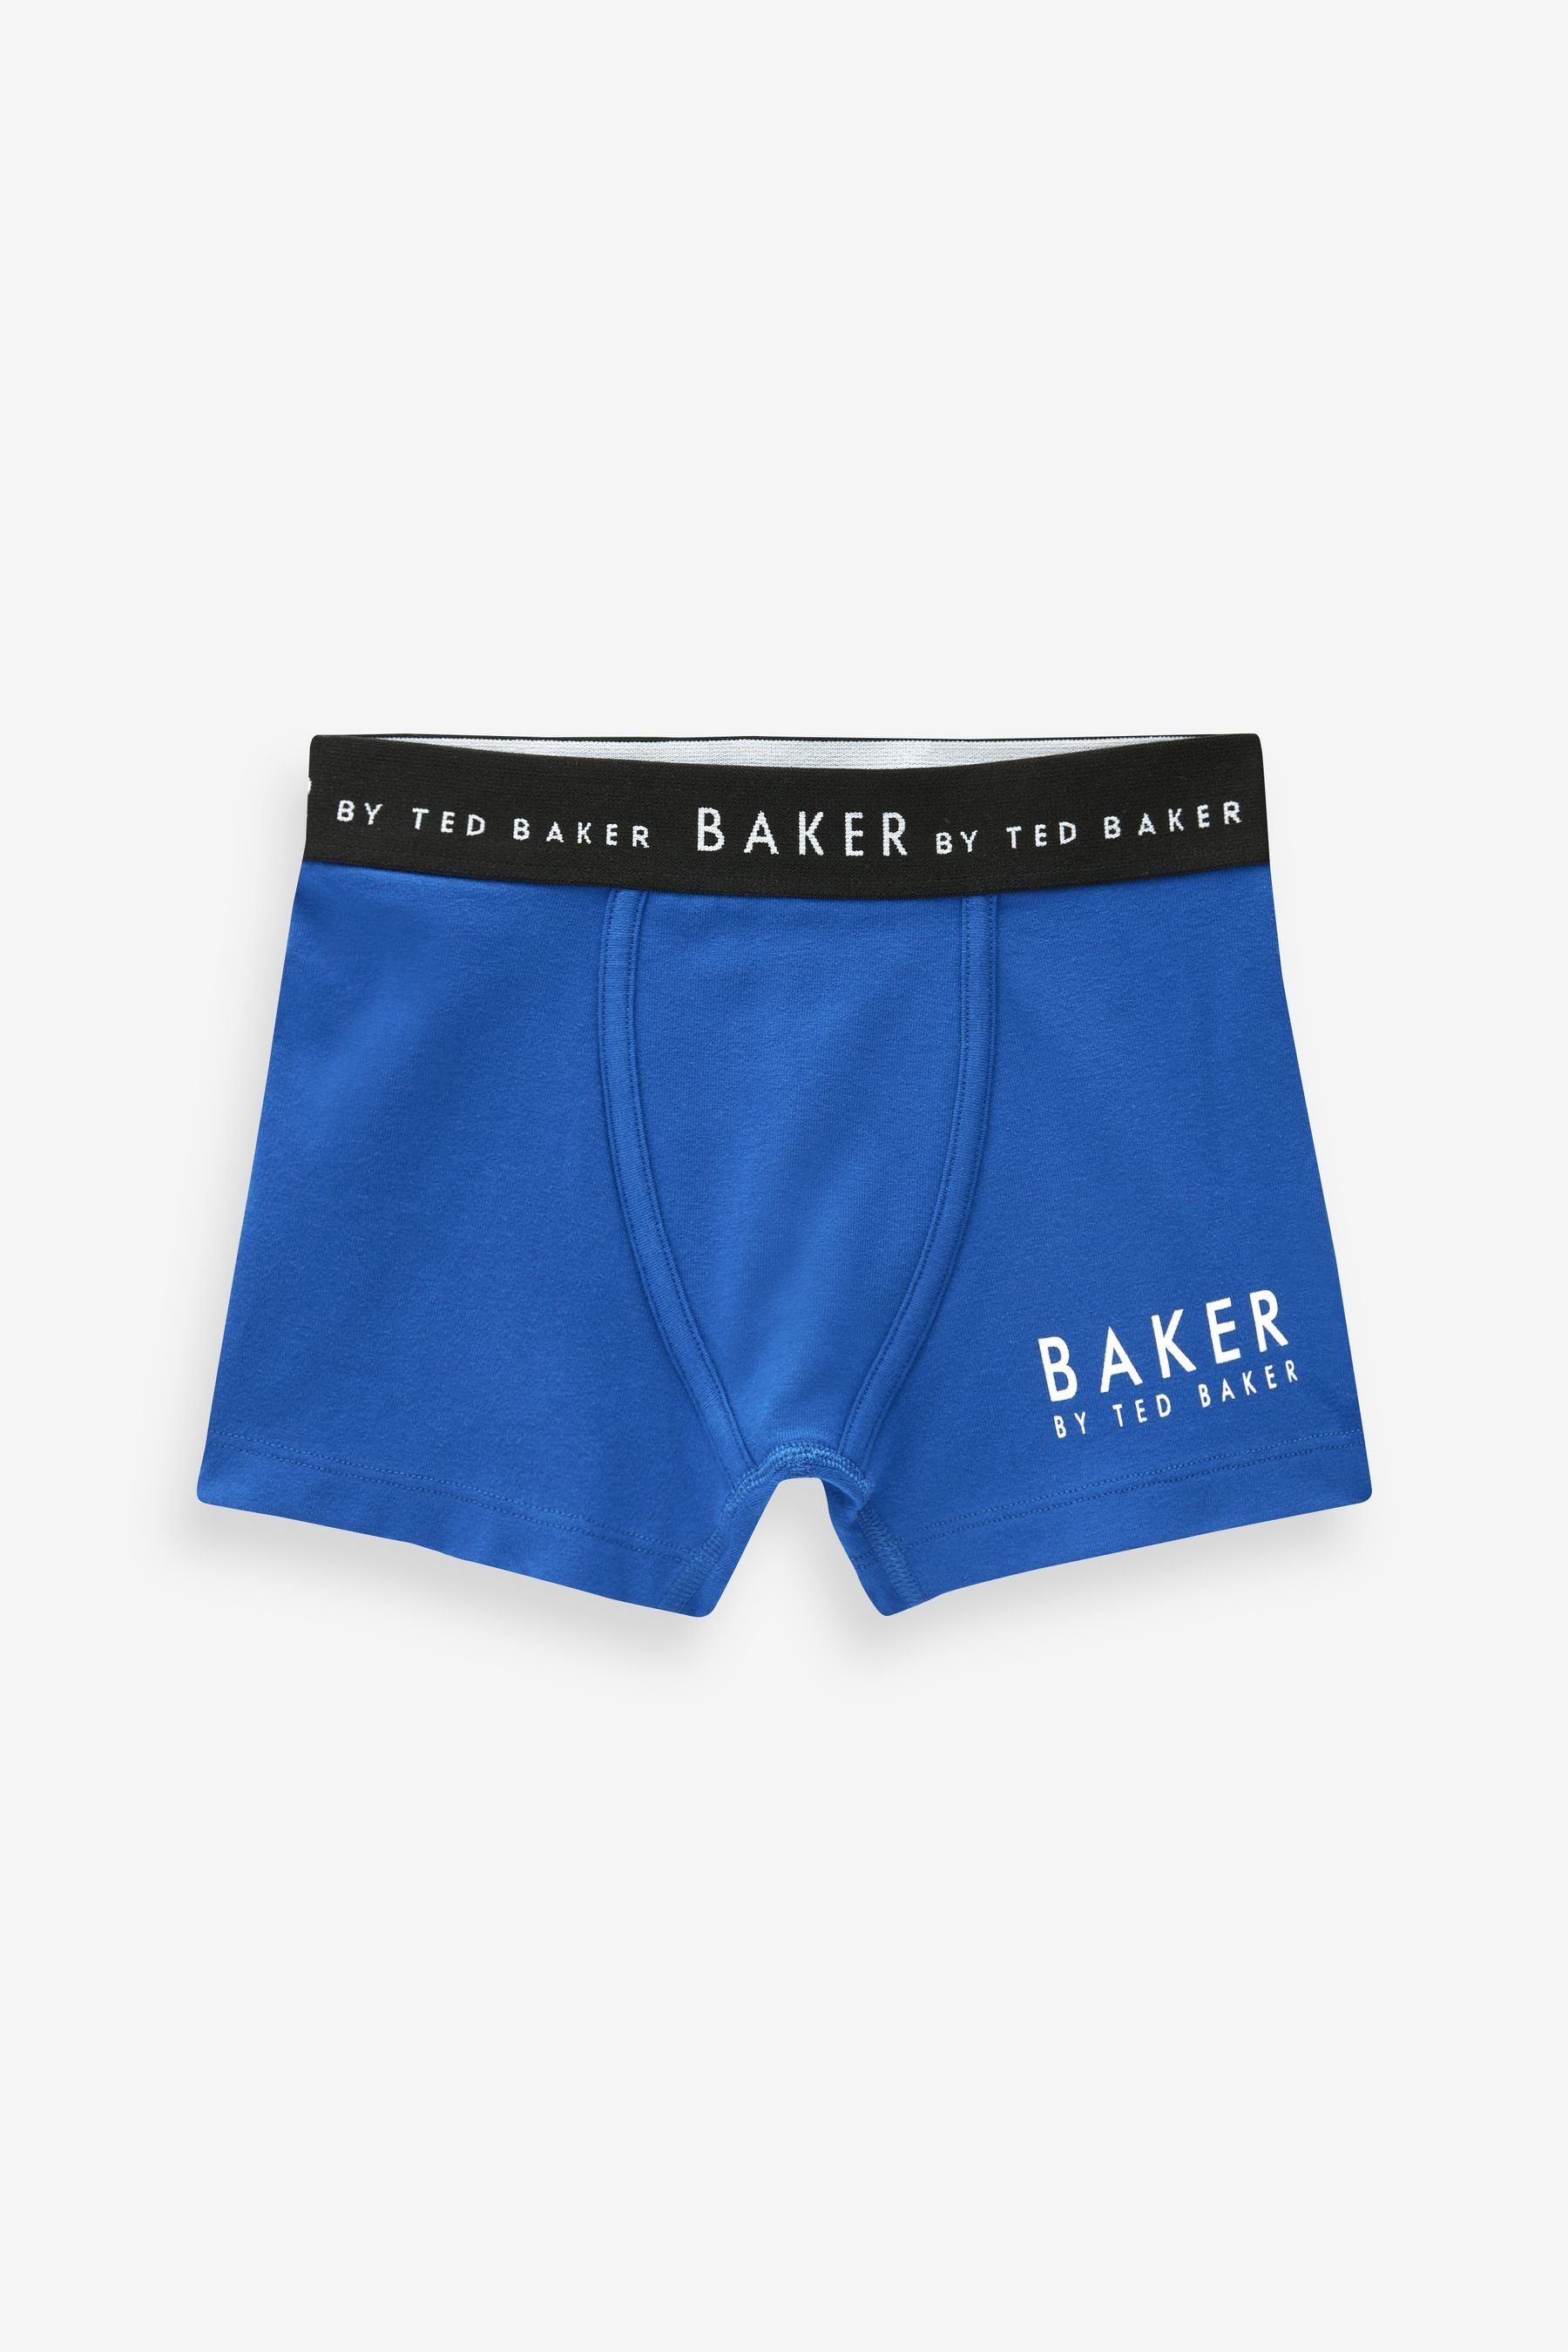 Baker Ted Baker (3-St) by Multi Baker Baker im Boxershorts 3er-Pack Boxershorts Ted By